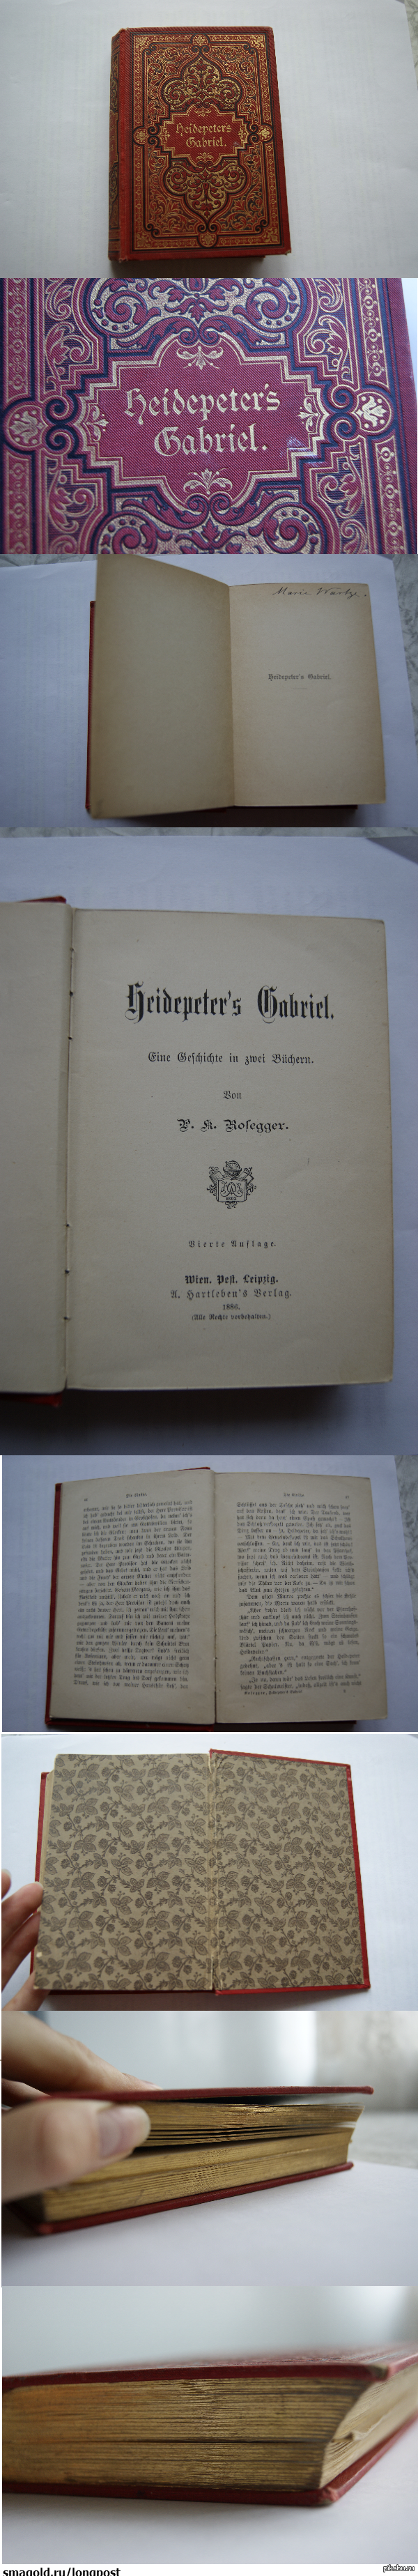 Еще старше К посту <a href="http://pikabu.ru/story/_2674665">http://pikabu.ru/story/_2674665</a>  Книга 1886 года, на немецком. Несмотря на возраст она в отличном состоянии. Края страничек будто позолочены